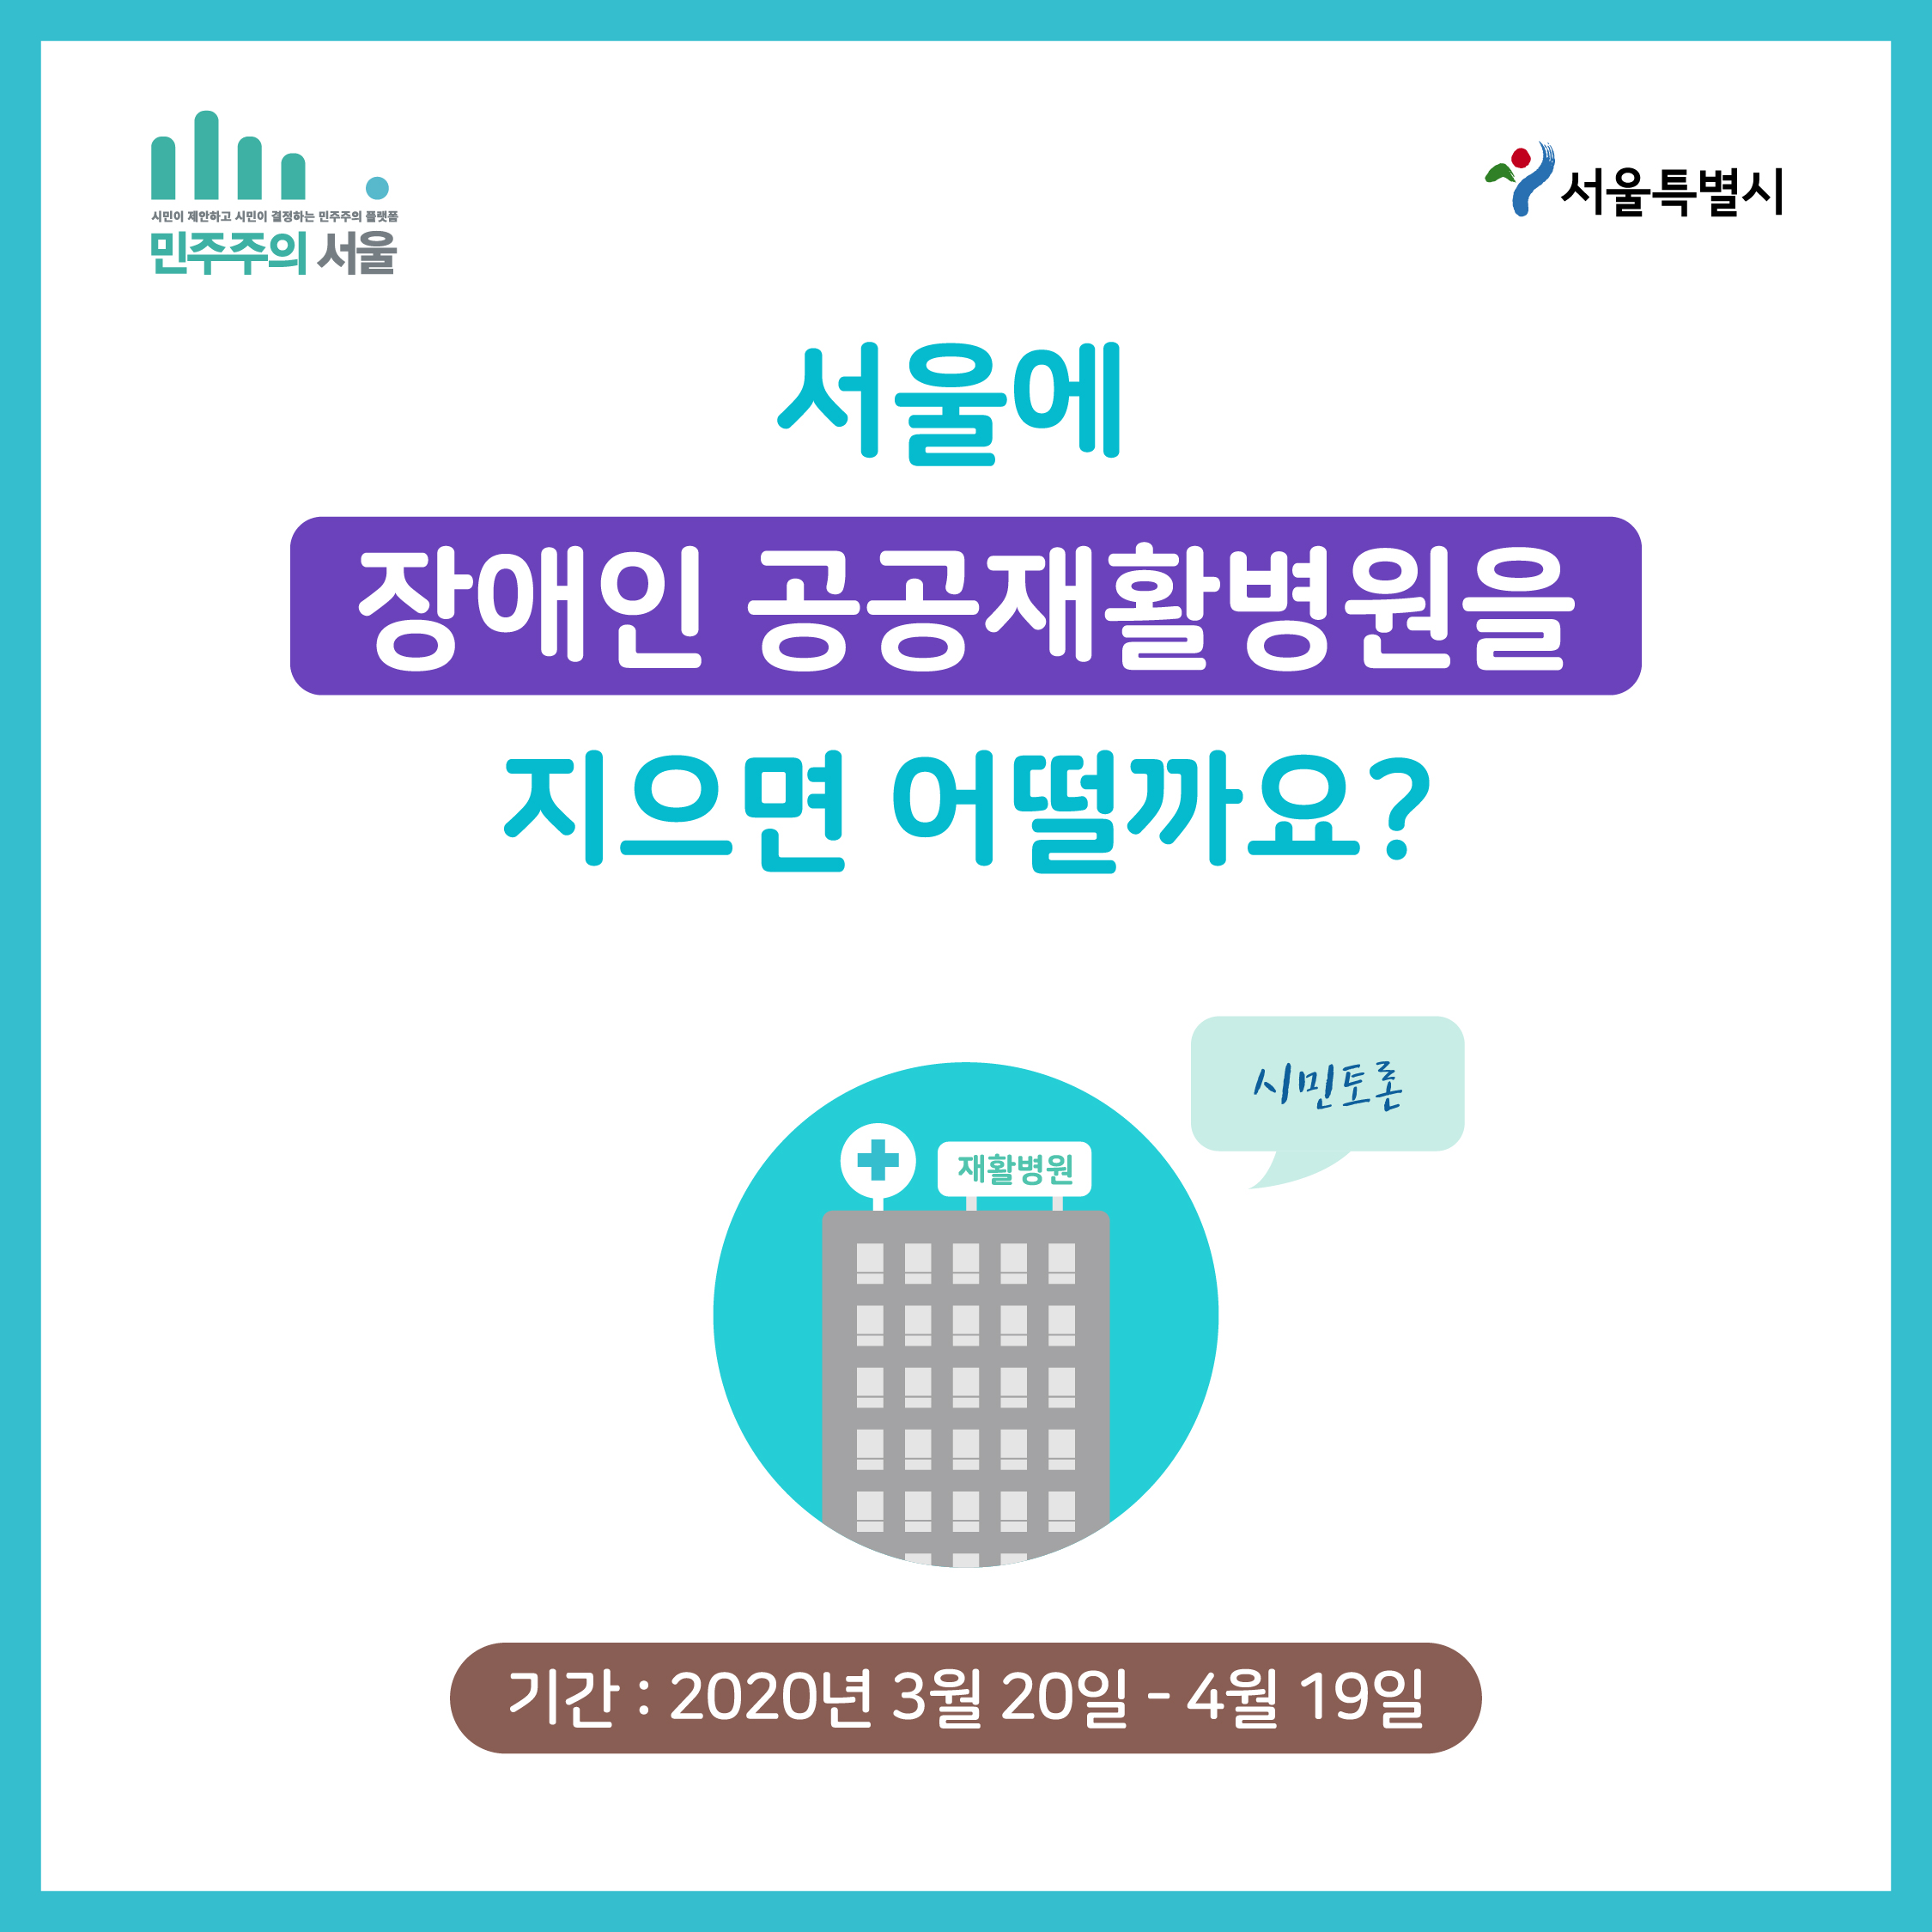 서울에 장애인 공공재활병원을 지으면 어떨까요? 시민토론 기간 : 2020년 3월 20일 ~ 4월 19일